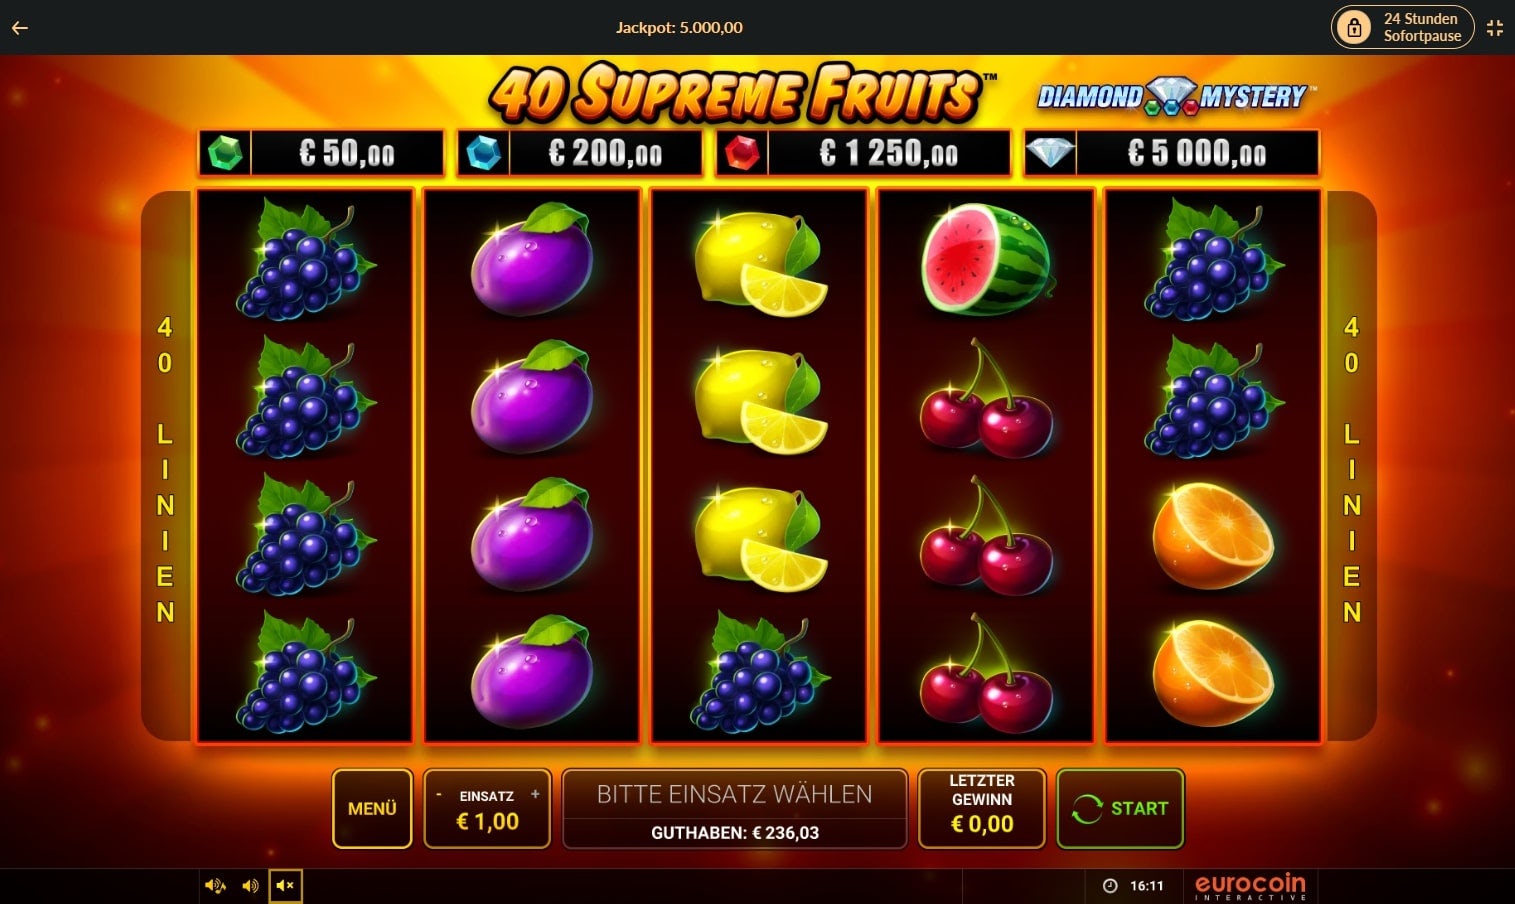 40 supreme fruits jpi bild1